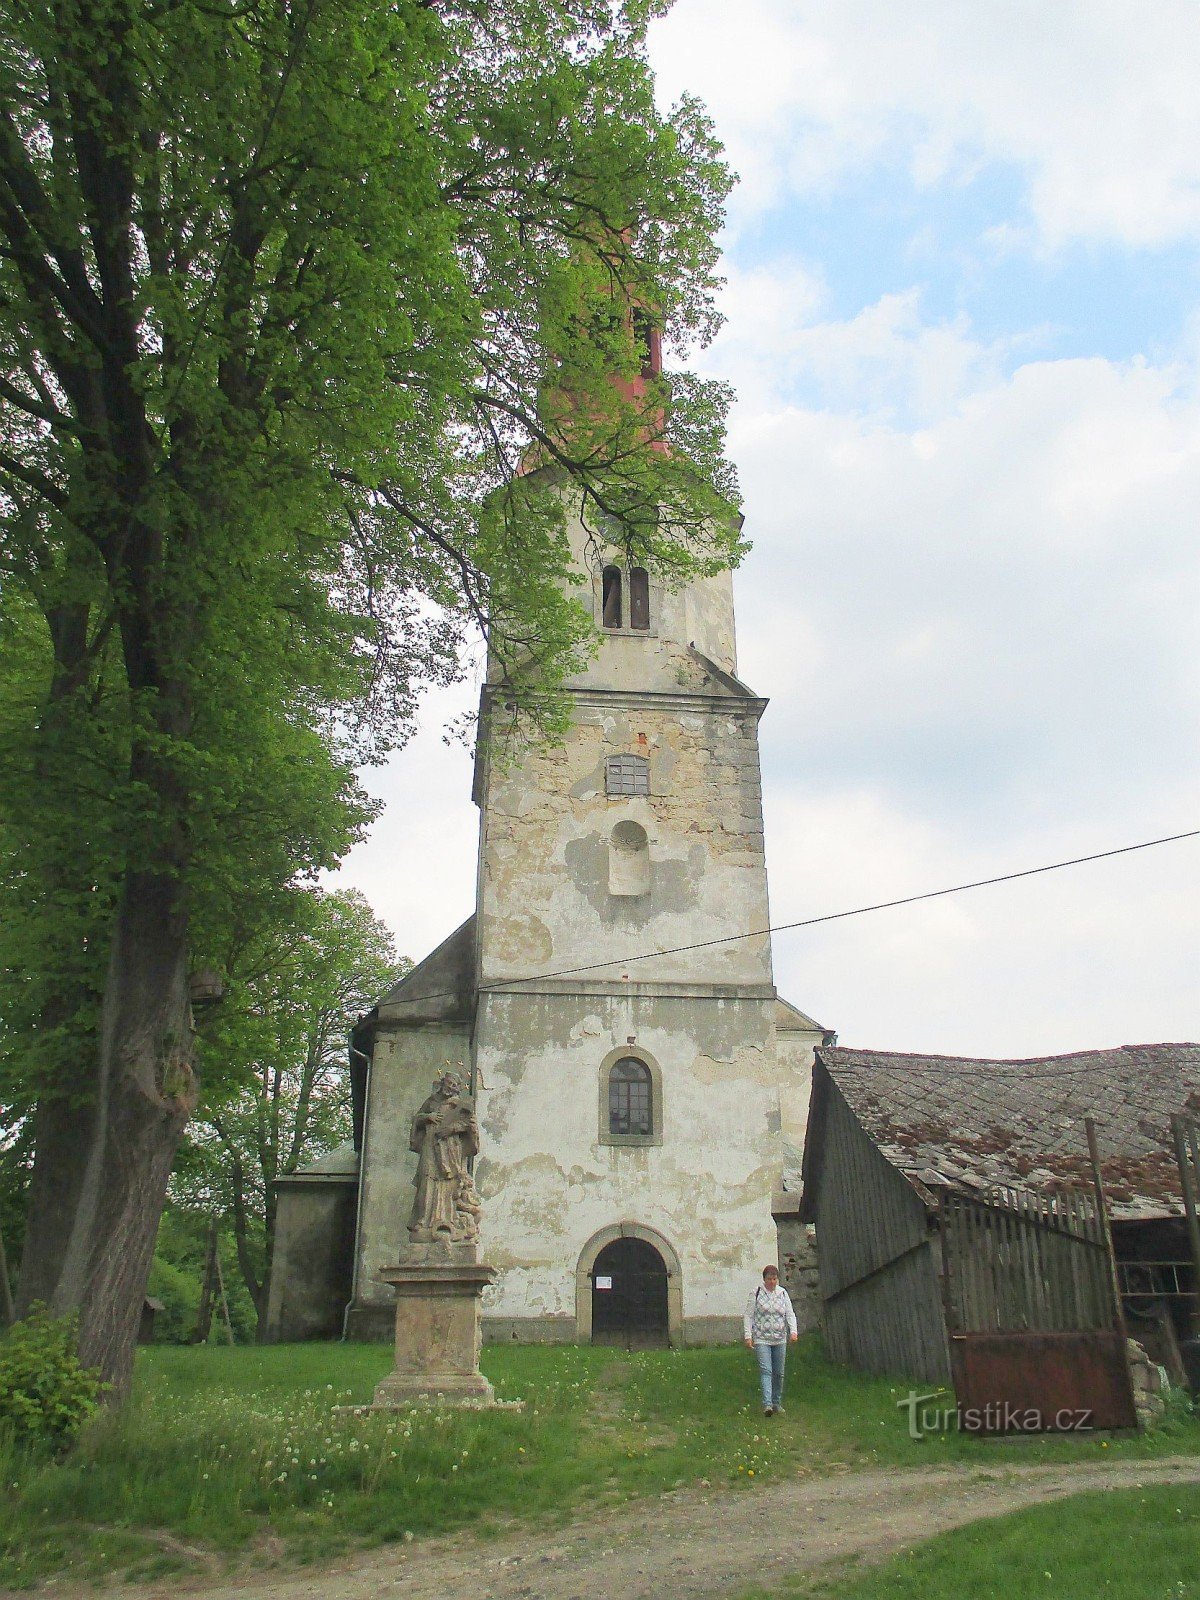 Église de St. Maximilien à Křižany